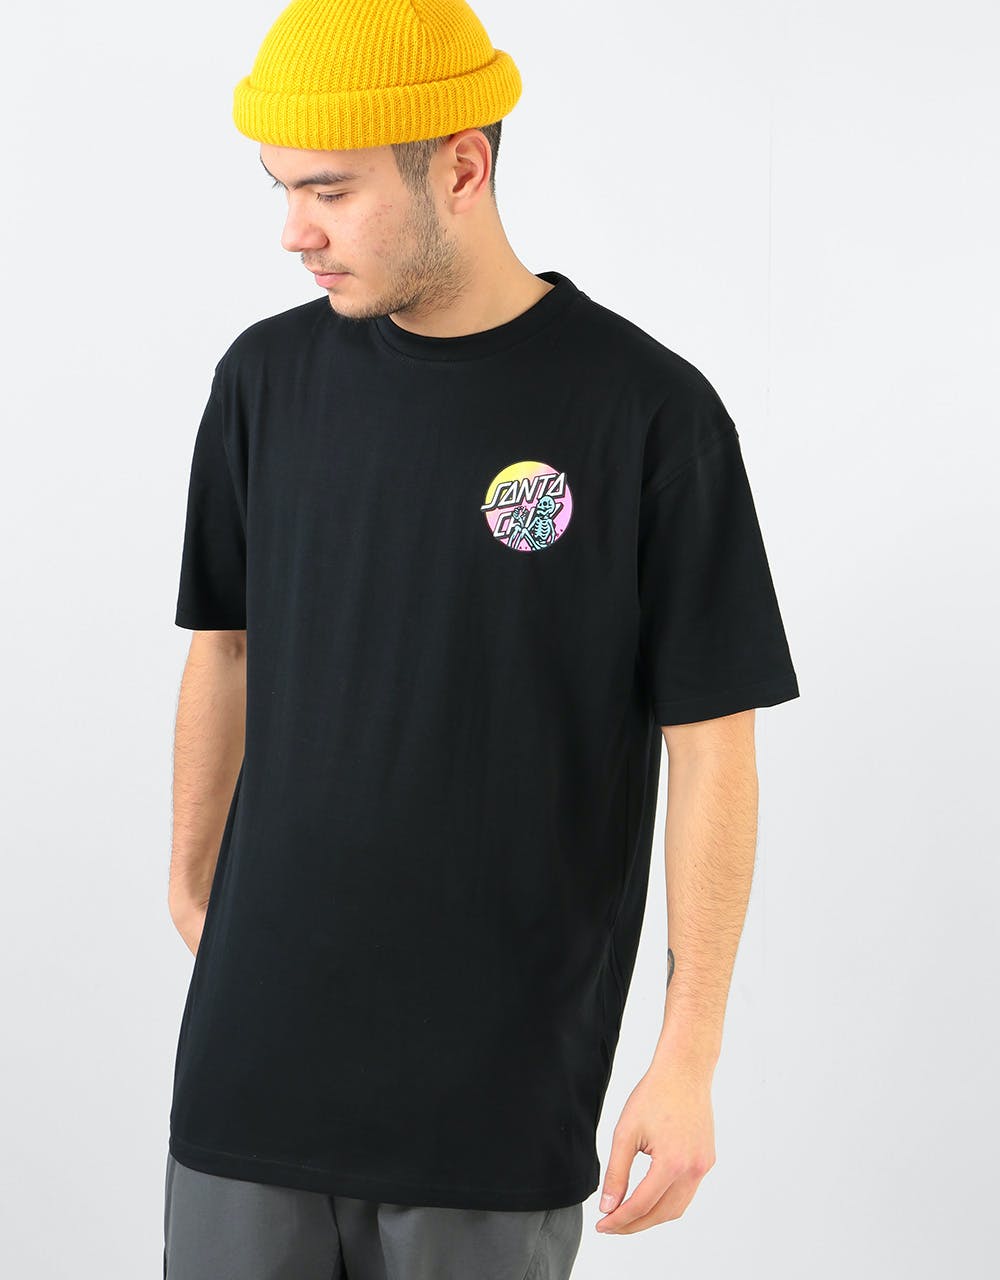 Santa Cruz Dope Planet T-Shirt - Black